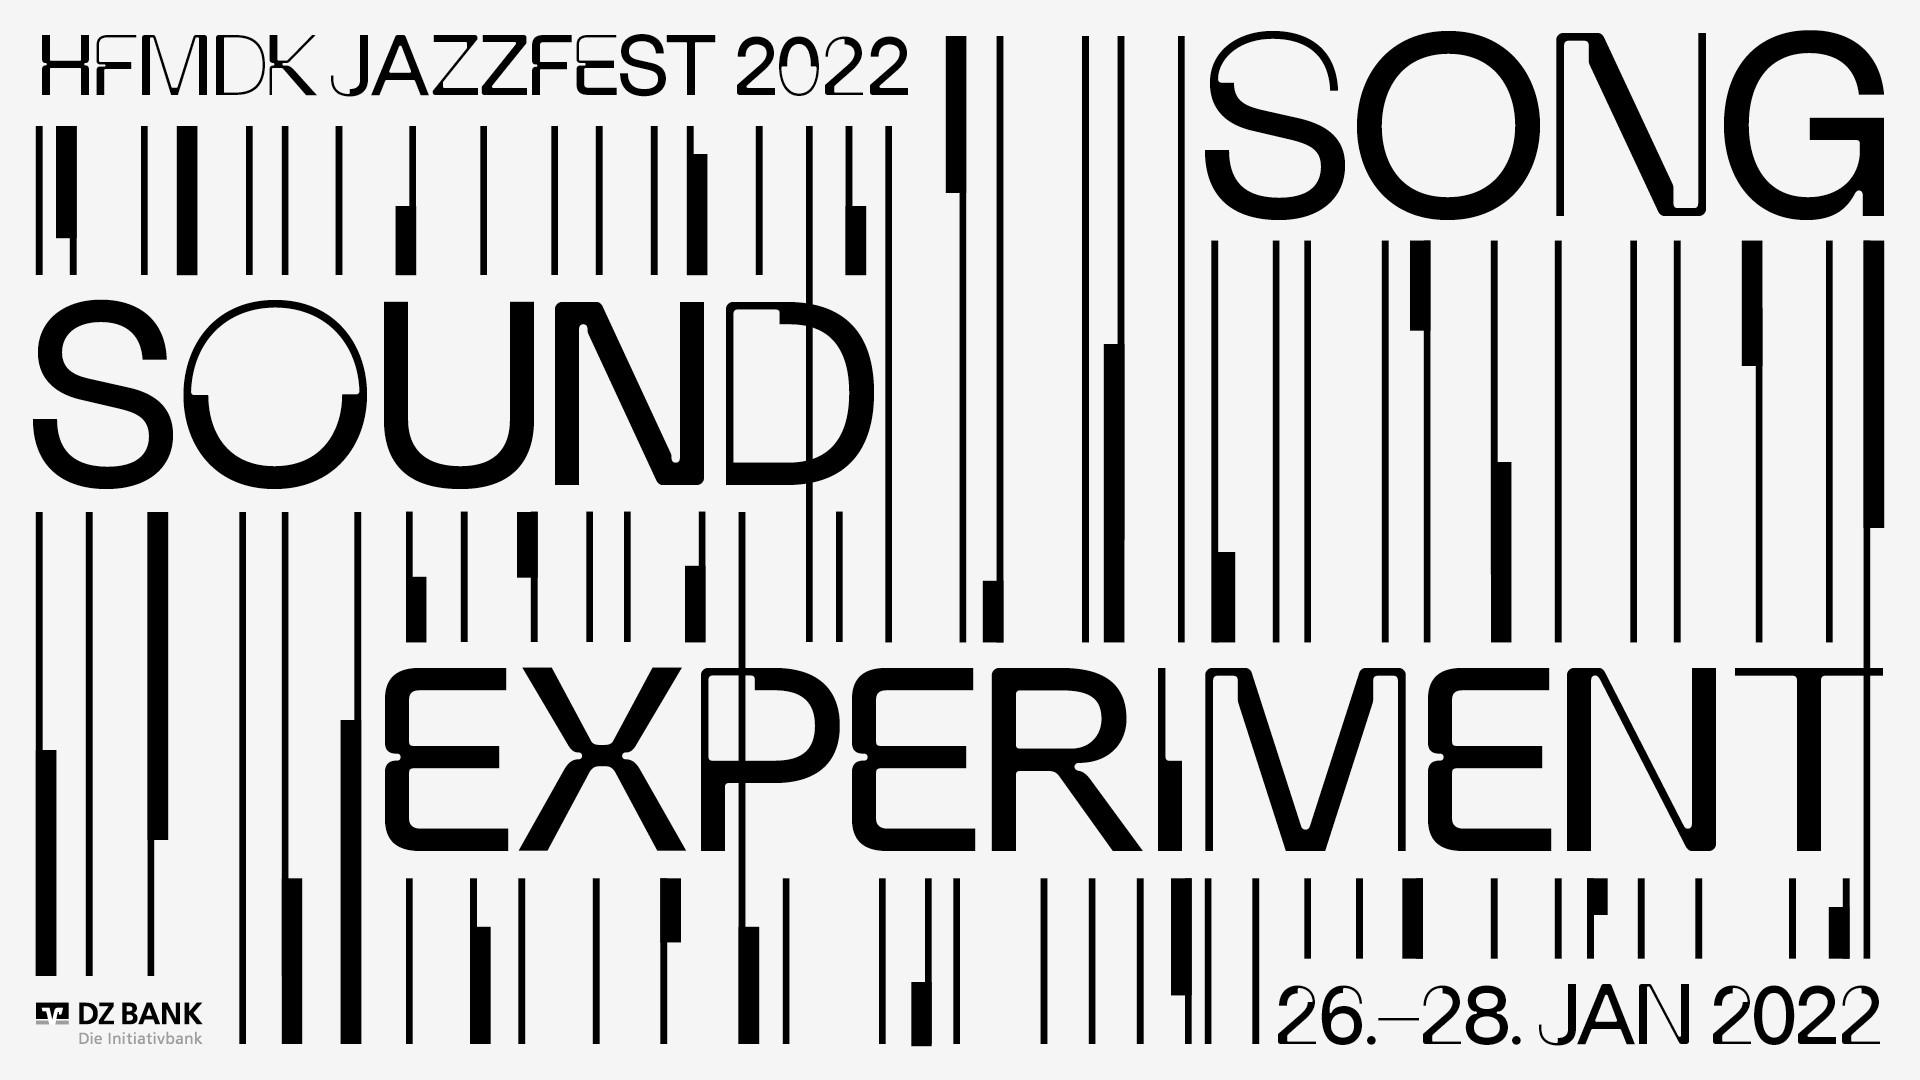 Plakat zum HfMDK Jazzfest 2022 mit dem Slogan "Song, Sound, Experiment"